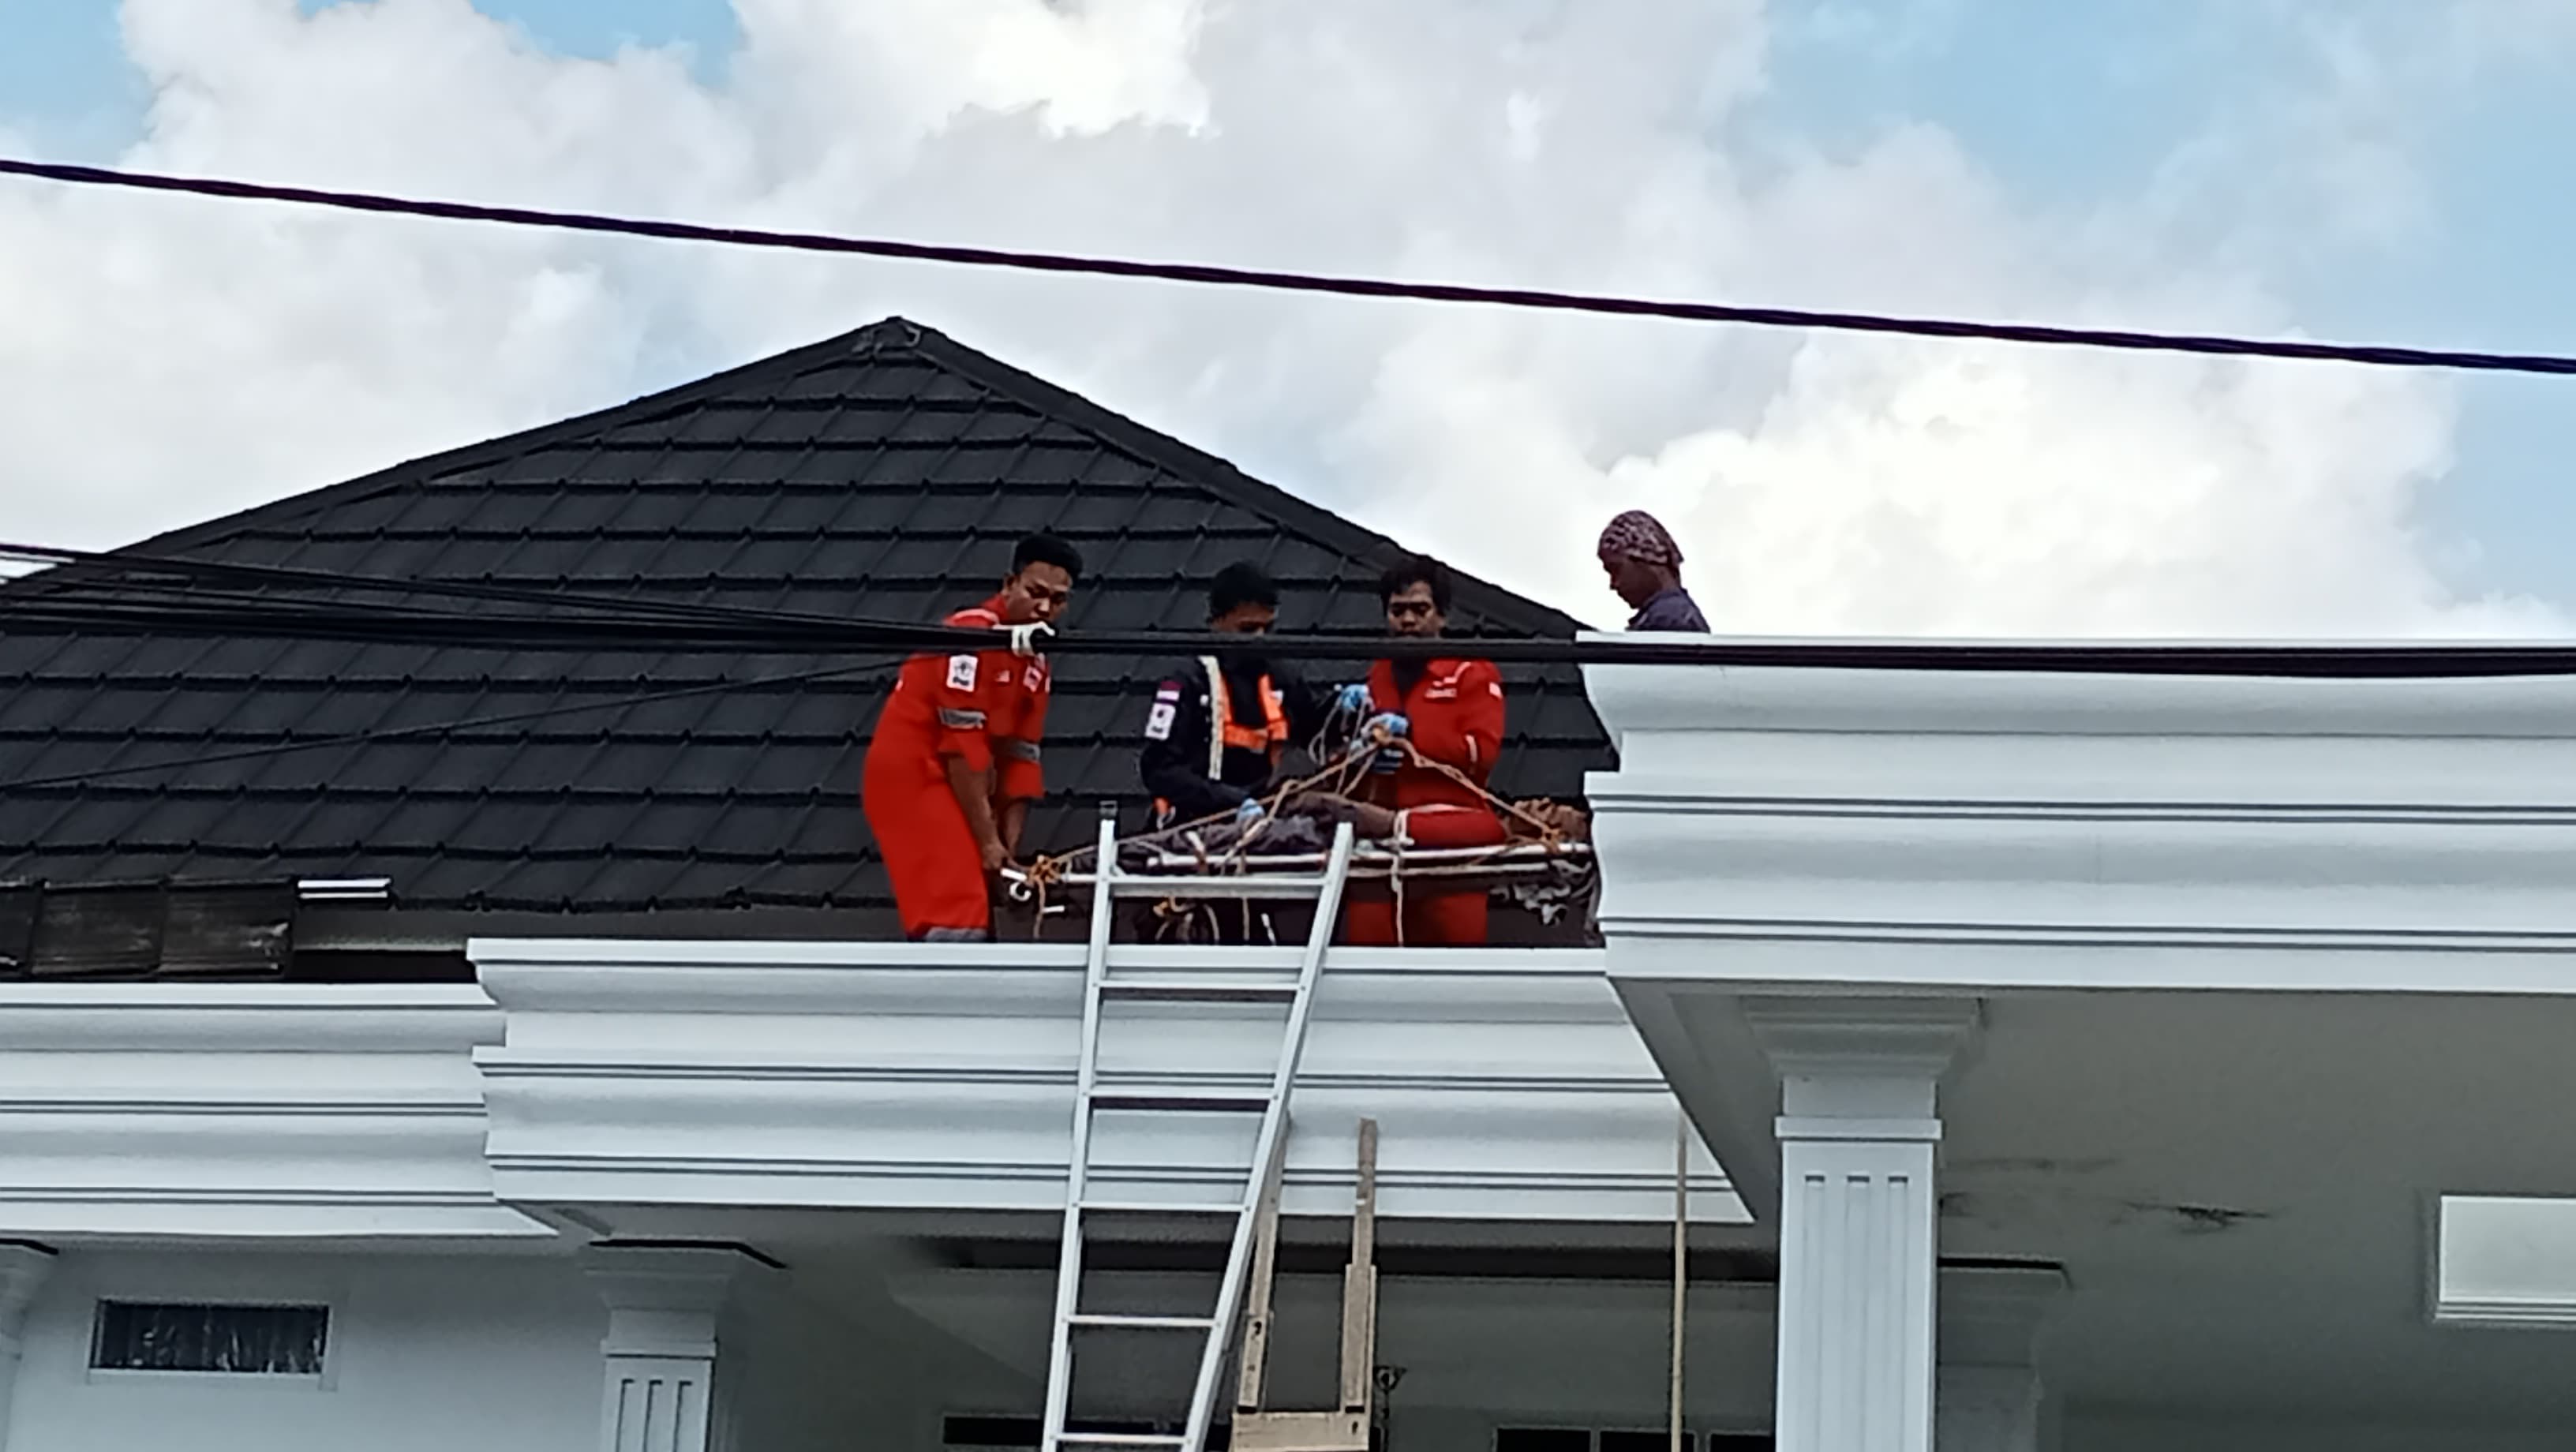 Perbaiki Atap Rumah, Seorang Pekerja di Palembang Tersengat Listrik, Begini Kondisinya